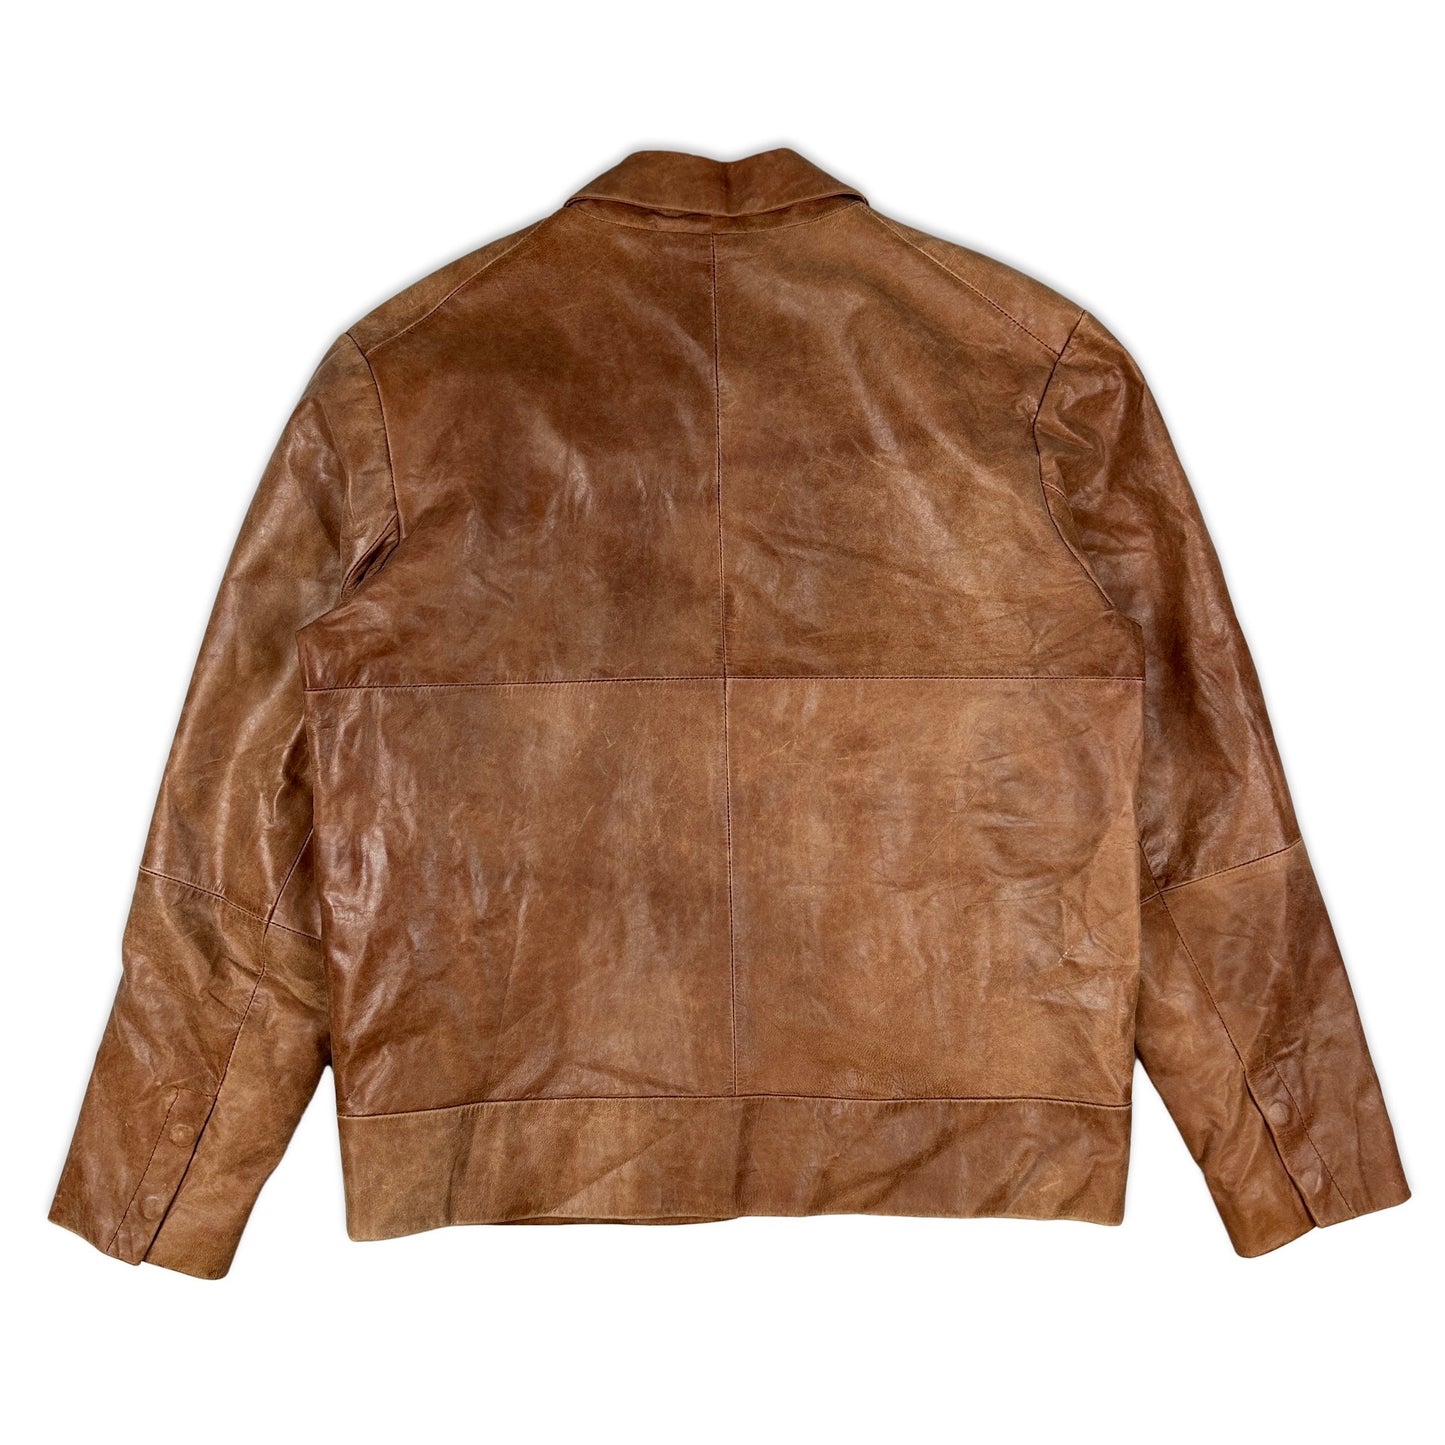 Vintage Preloved Tan Leather Jacket 14